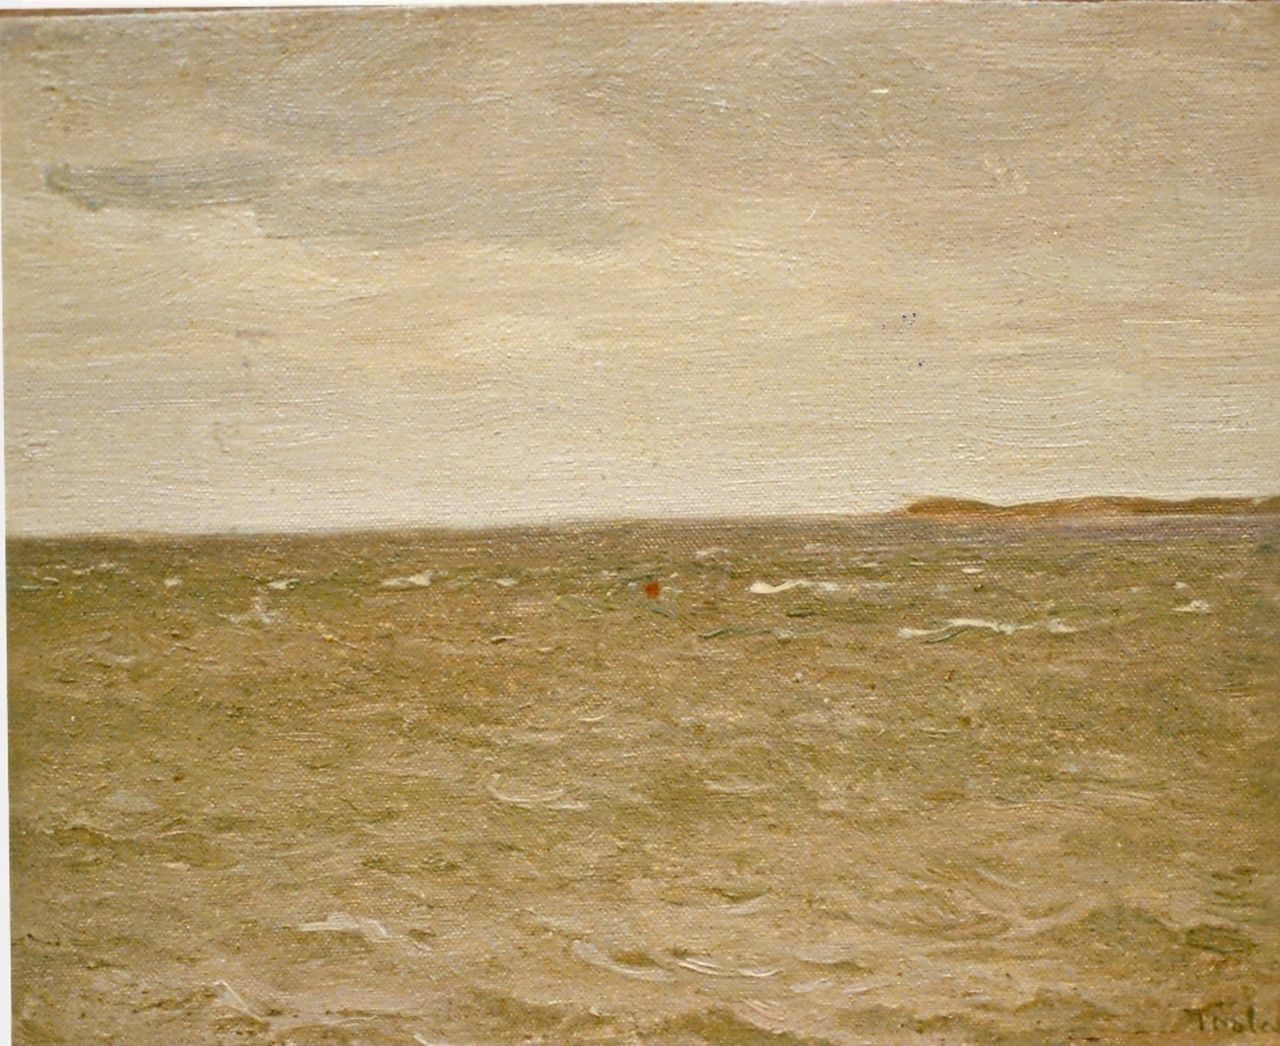 Tholen W.B.  | Willem Bastiaan Tholen, Gezicht op Veerse meer, olieverf op doek op paneel 18,7 x 24,1 cm, gesigneerd rechtsonder en gedateerd 98